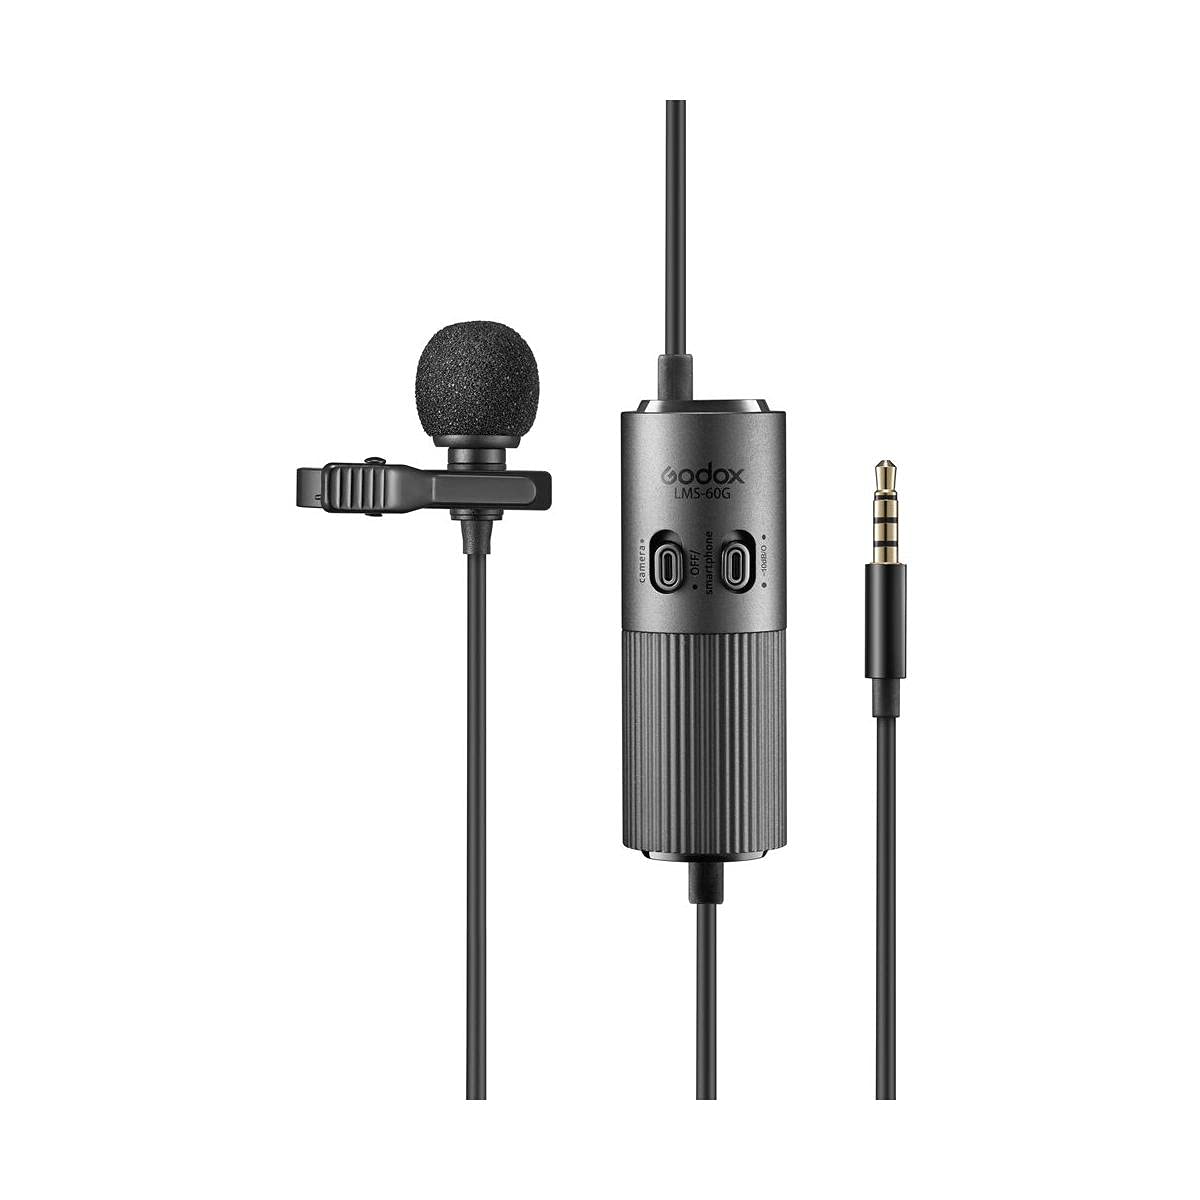 Micrófono corbatero omnidireccional Godox LMS-60G, control de ganancia, cámaras y celulares